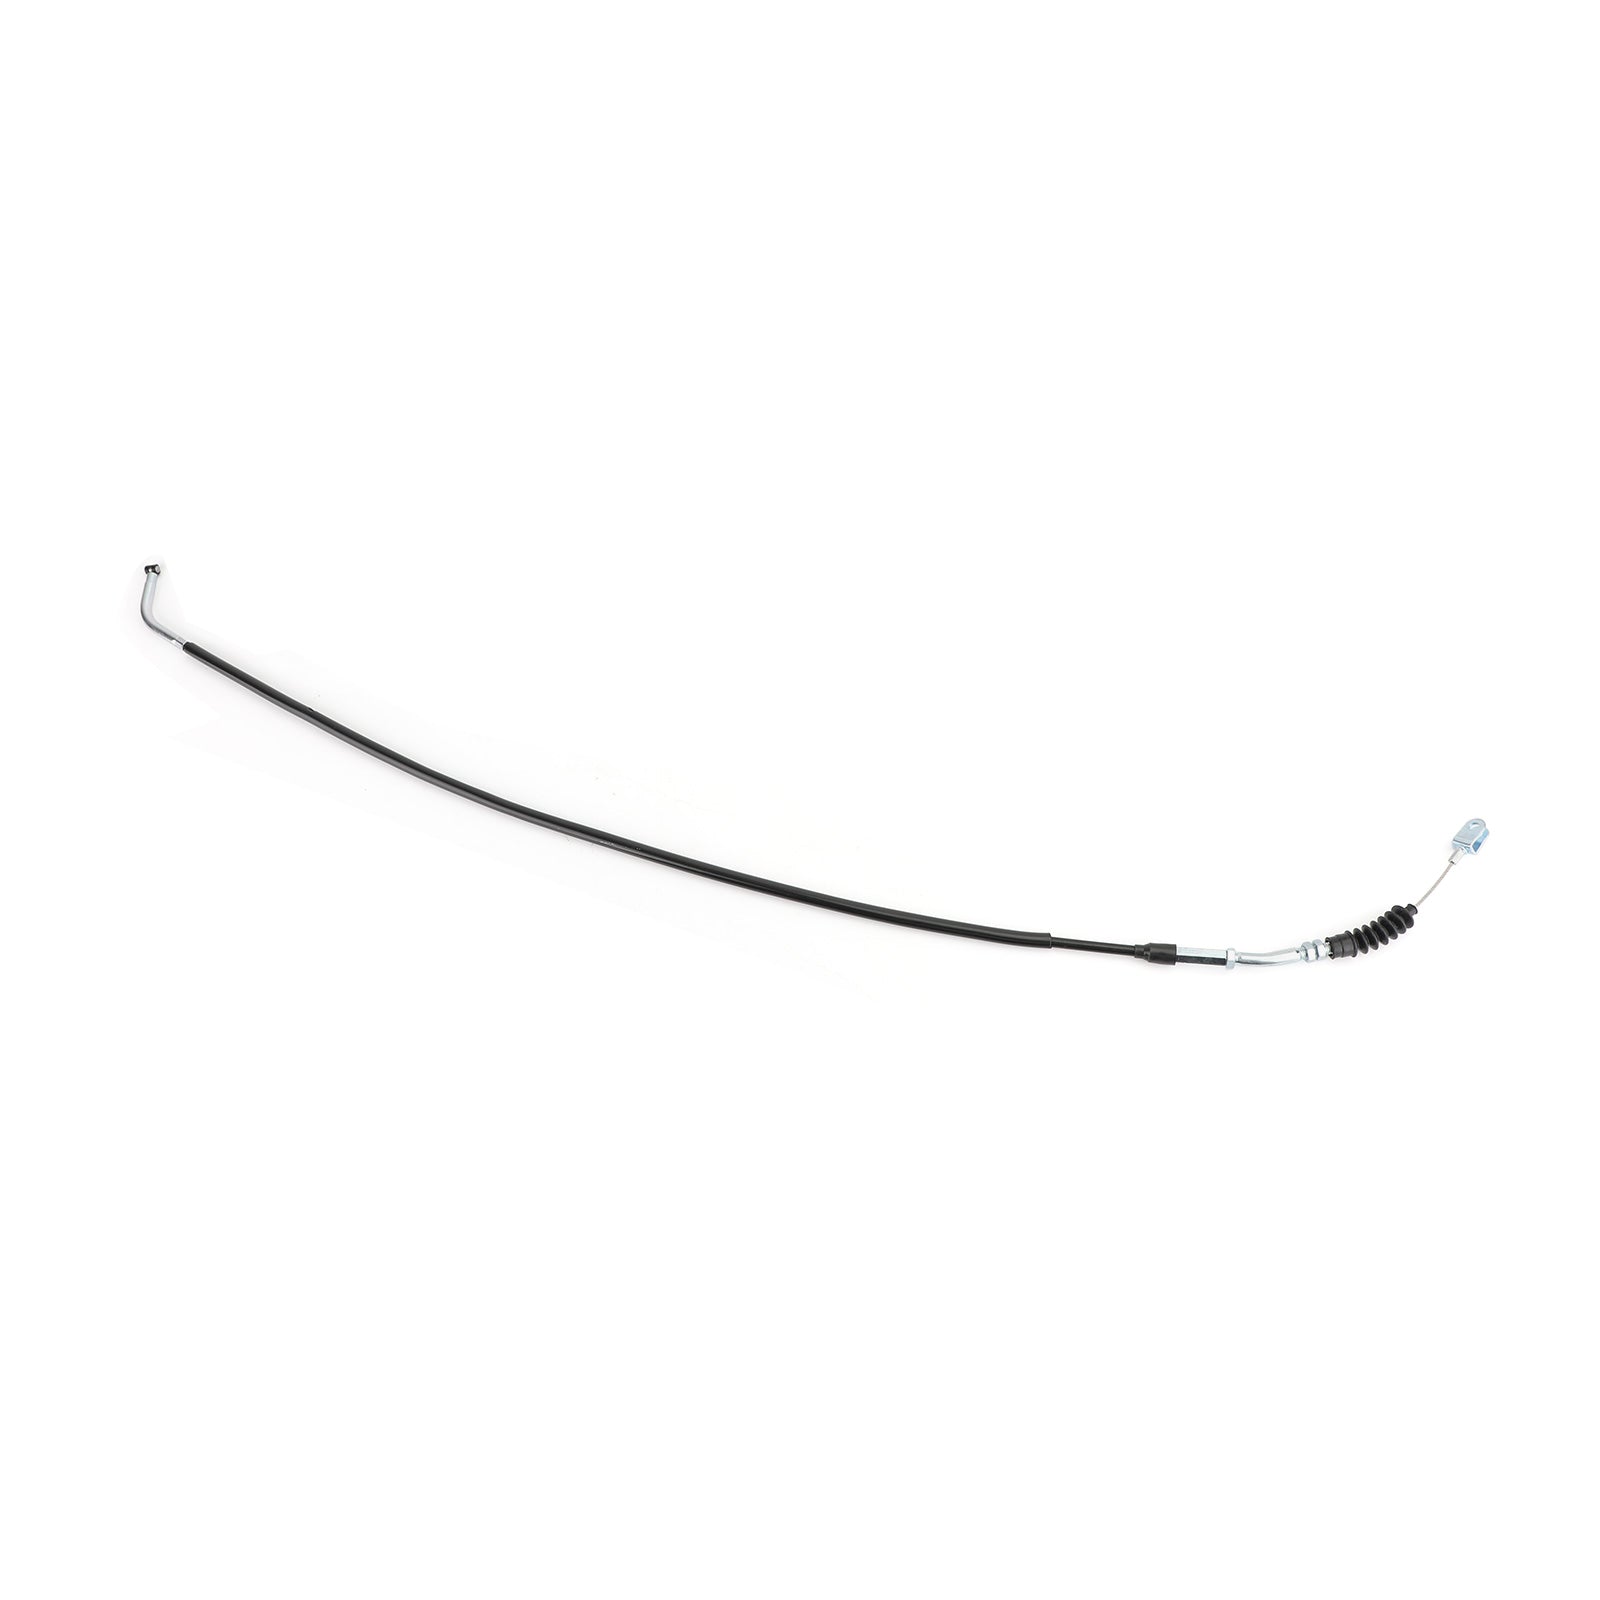 Câble d'embrayage de moto fil d'acier 58200-48HC0 pour Suzuki GW250 Inazuma 2014-17 générique